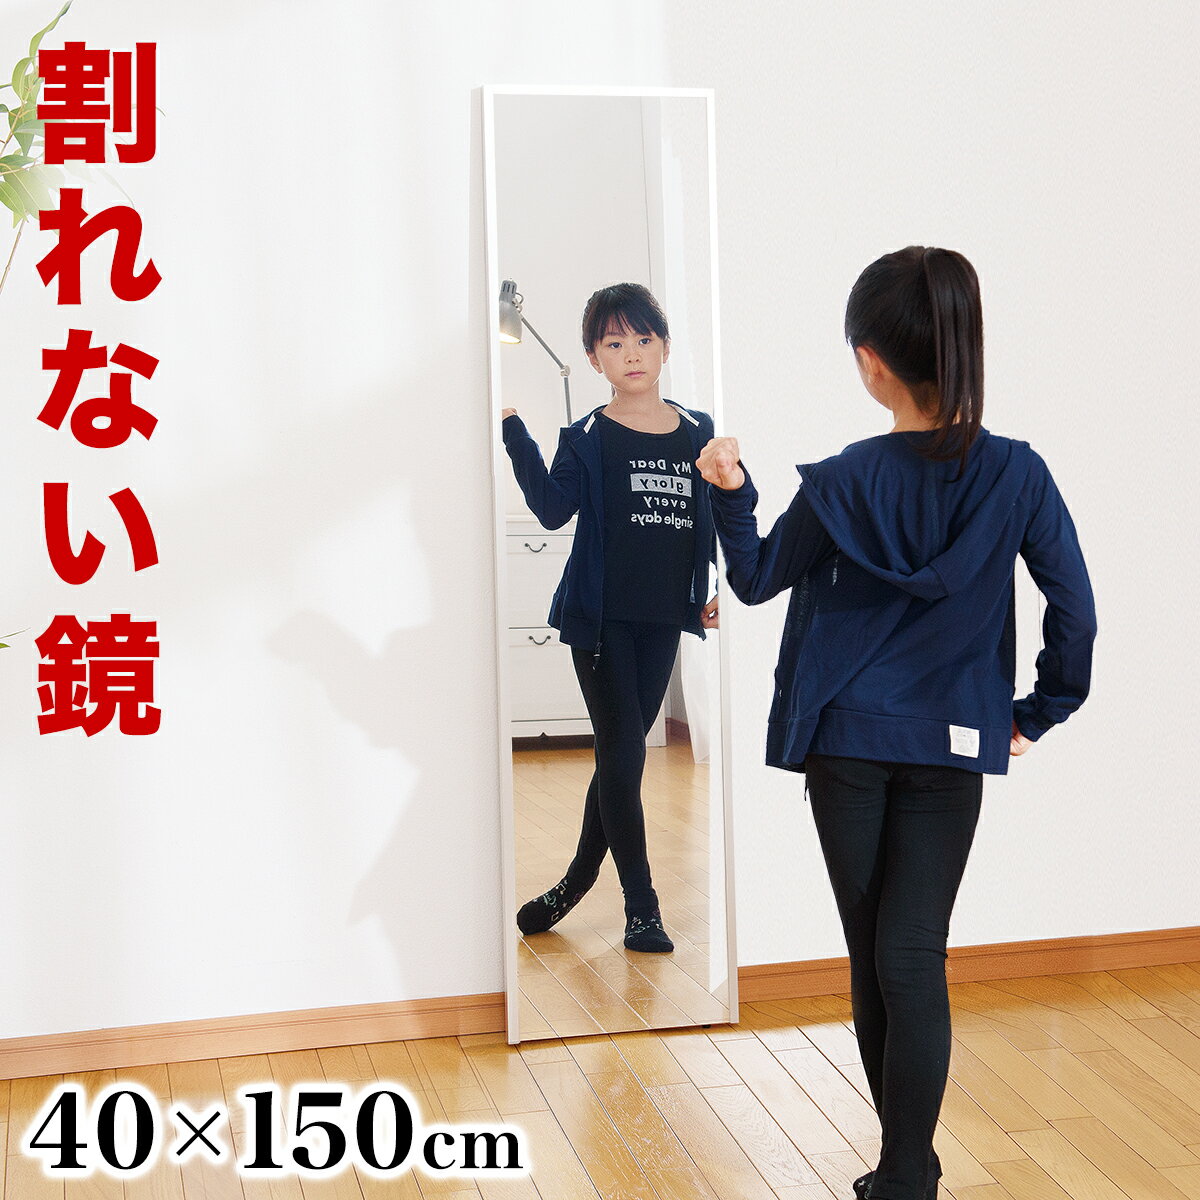 割れない鏡 幅40 高さ150cm リフェクスミラー refex ミラー 日本製 鏡 壁掛け 全身 おしゃれ 姿見 ミラー 国産 フィ…